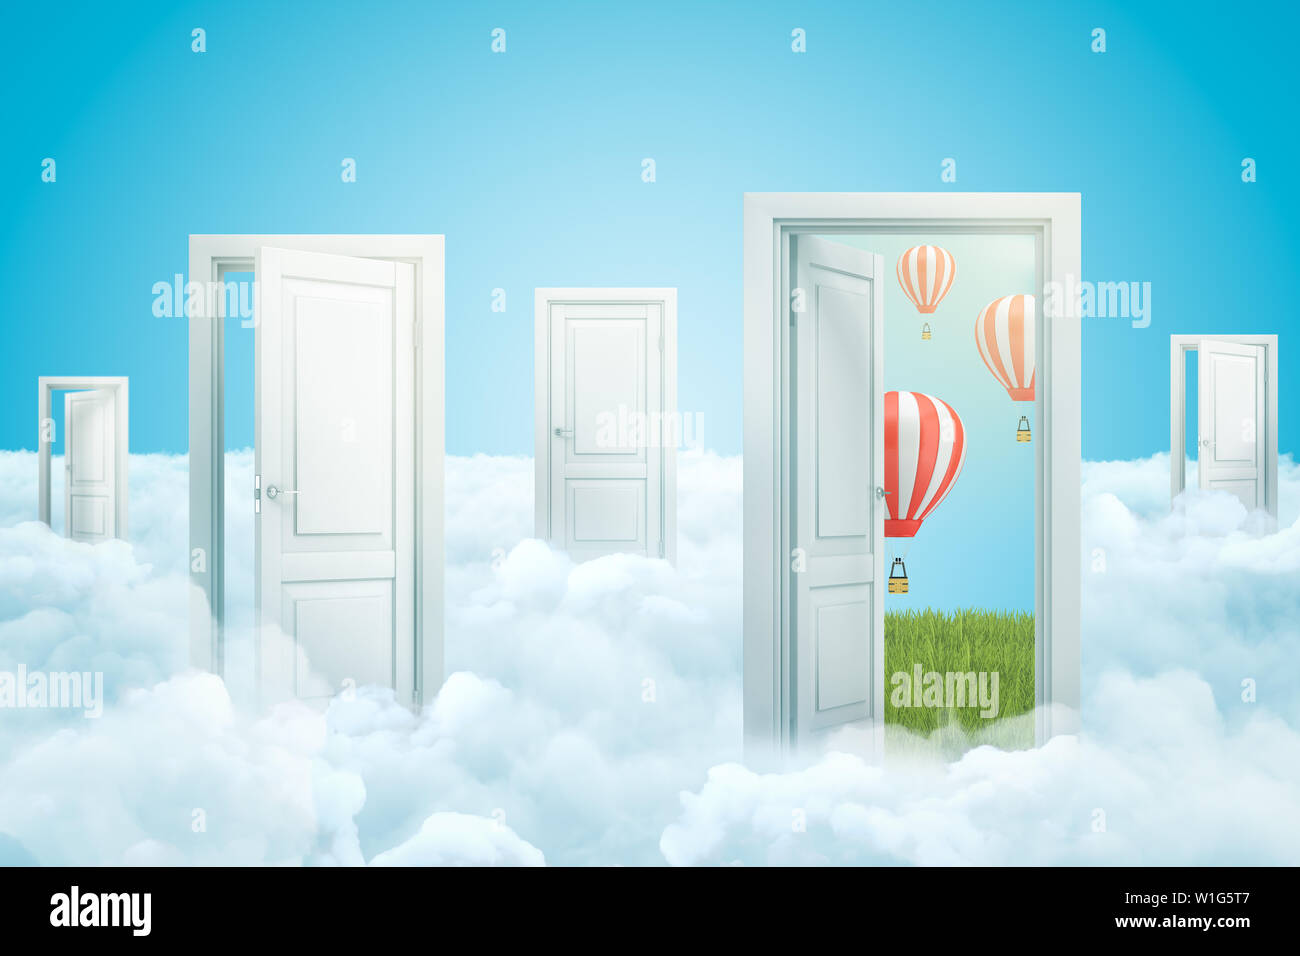 Le rendu 3D de nuages blancs avec des portes ouvertes et de ballons à air chaud à rayures sur fond bleu Banque D'Images